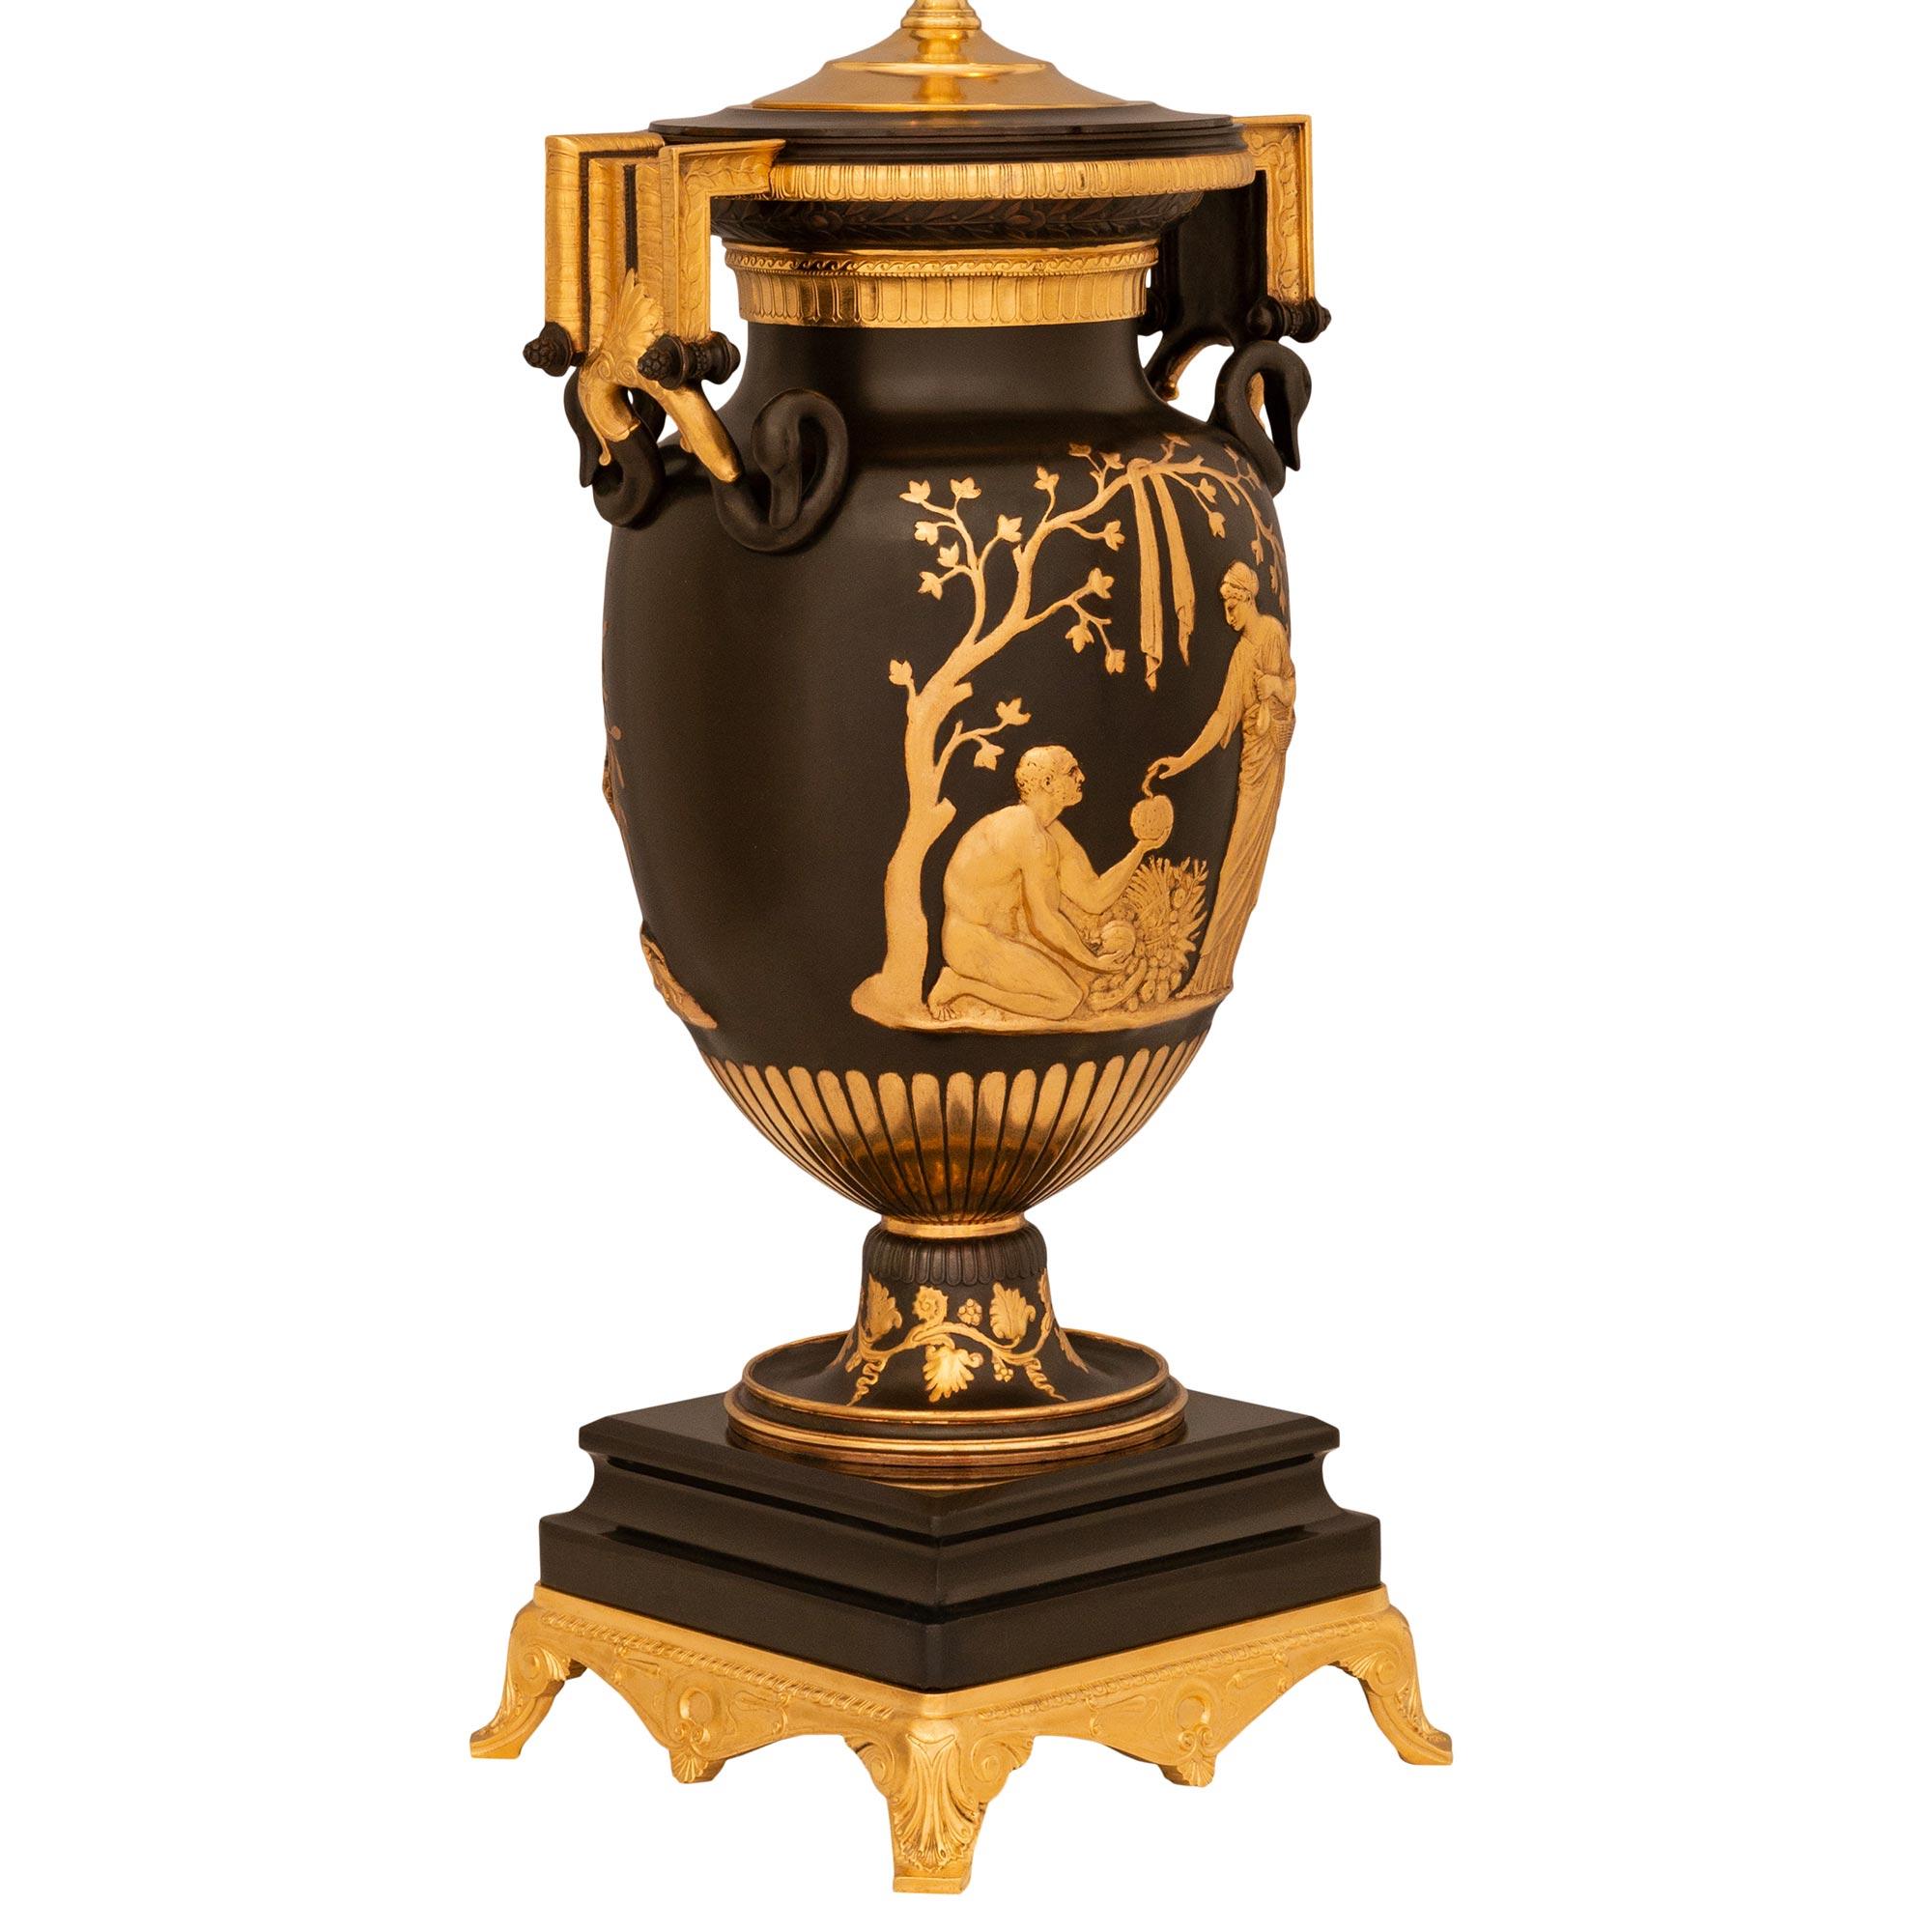 Une paire impressionnante et de grande taille de lampes néo-grecques en bronze patiné, marbre noir belge et bronze doré, datant de la Belle Epoque, attribuée à Ferdinand Barbedienne. La paire de lampes de forme balustre repose sur des bases carrées